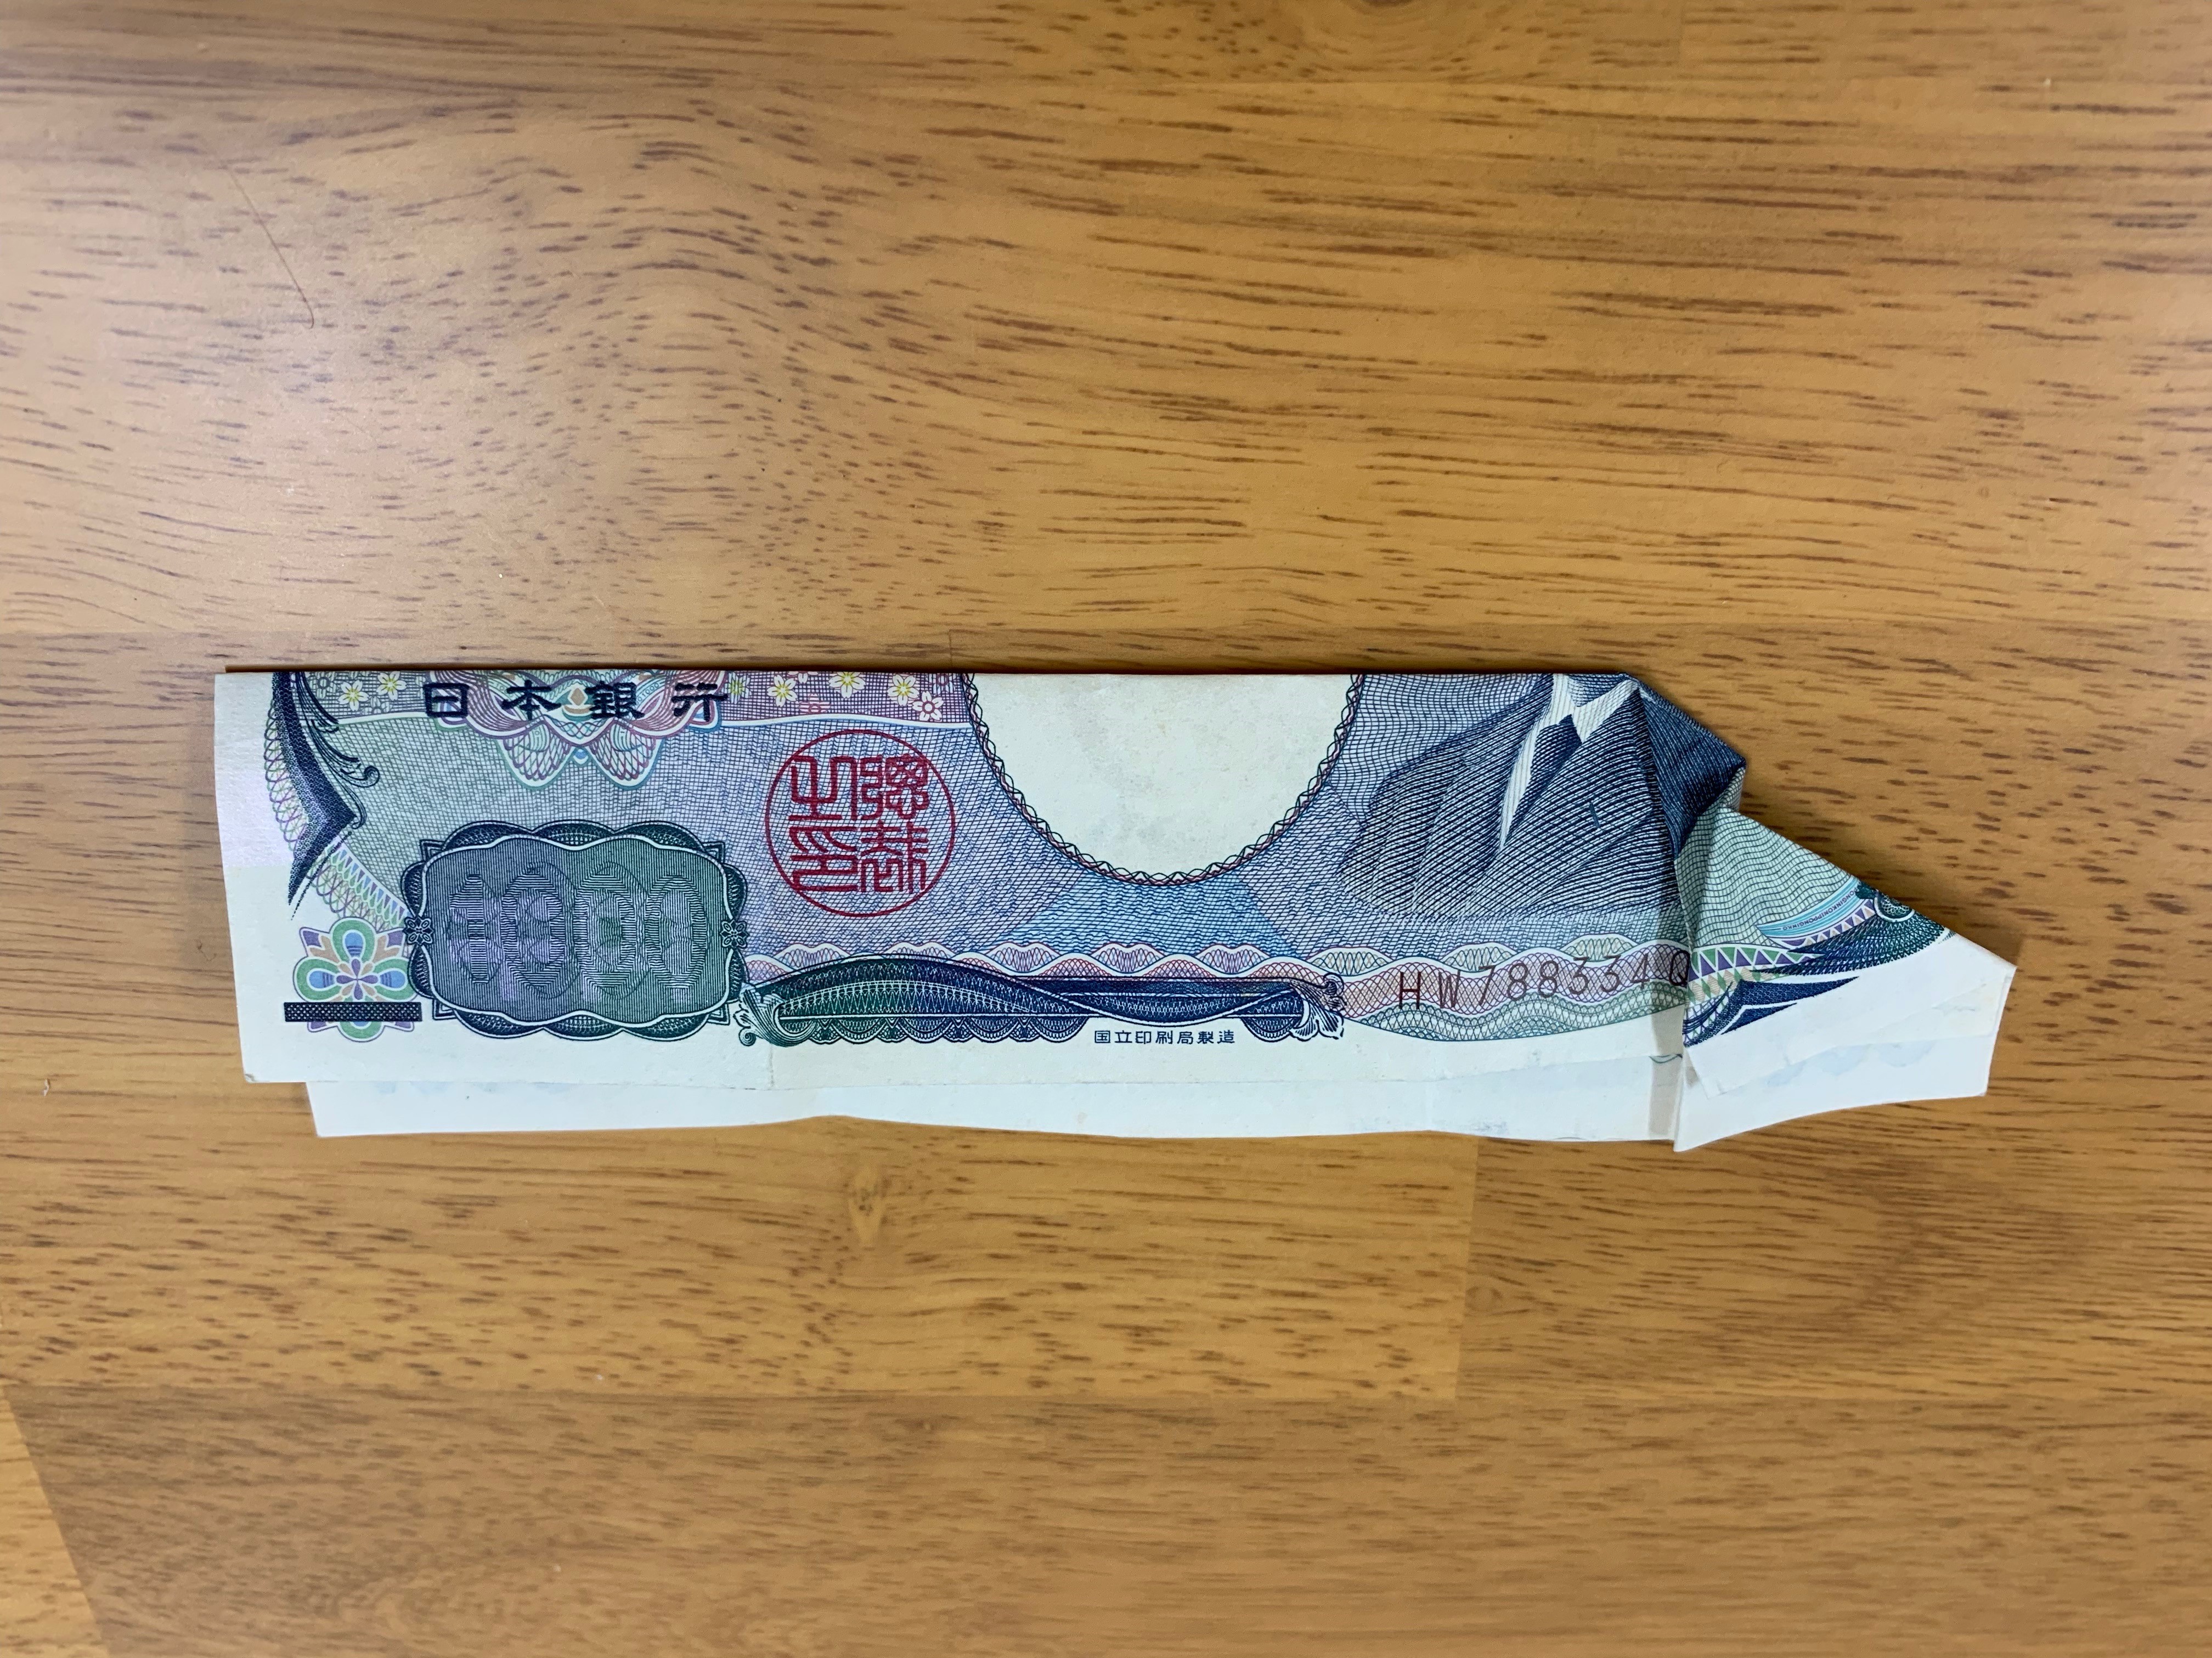 ターバン野口 お札 千円札のおもしろい折り方の画像5